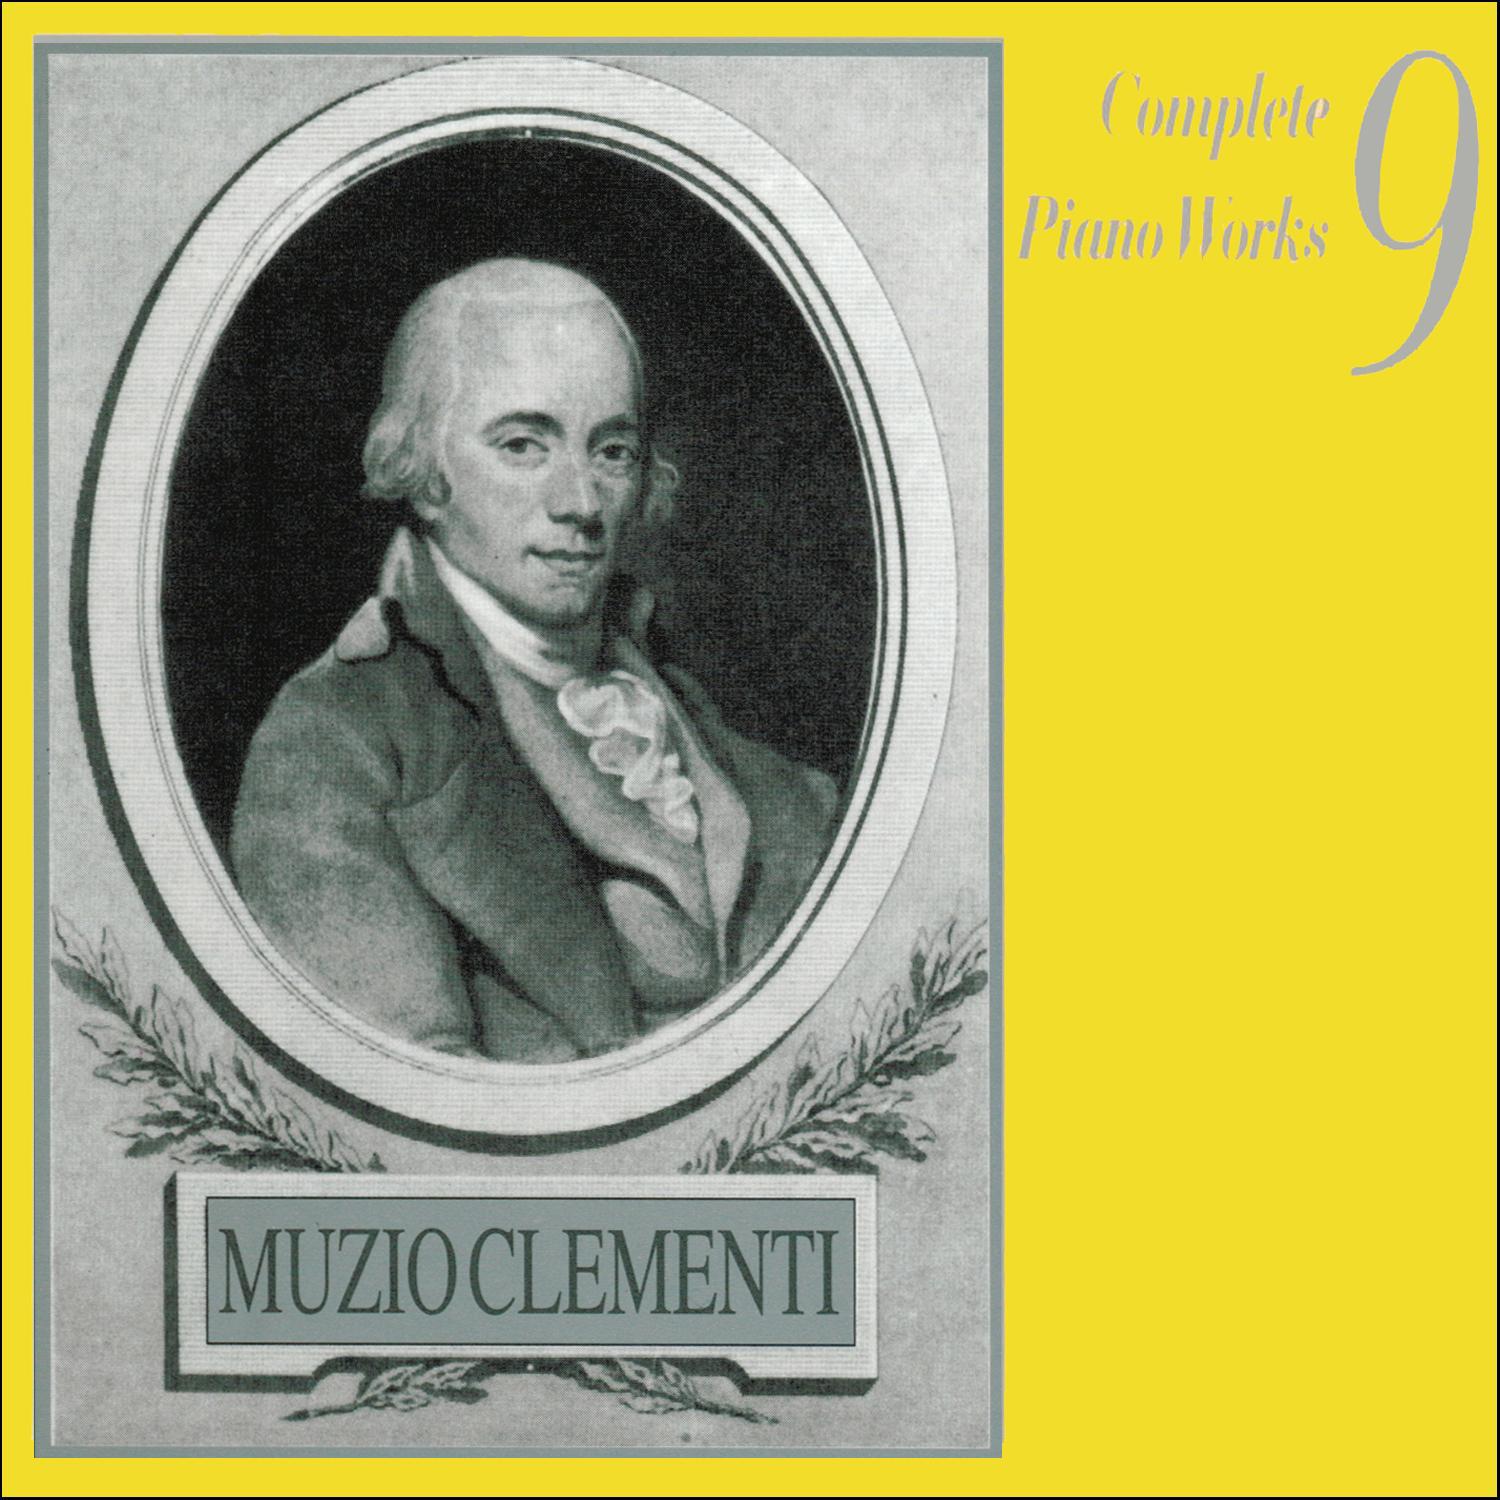 Muzio Clementi - Sonata Op. 12, No. 2 in E flat major: l. Presto